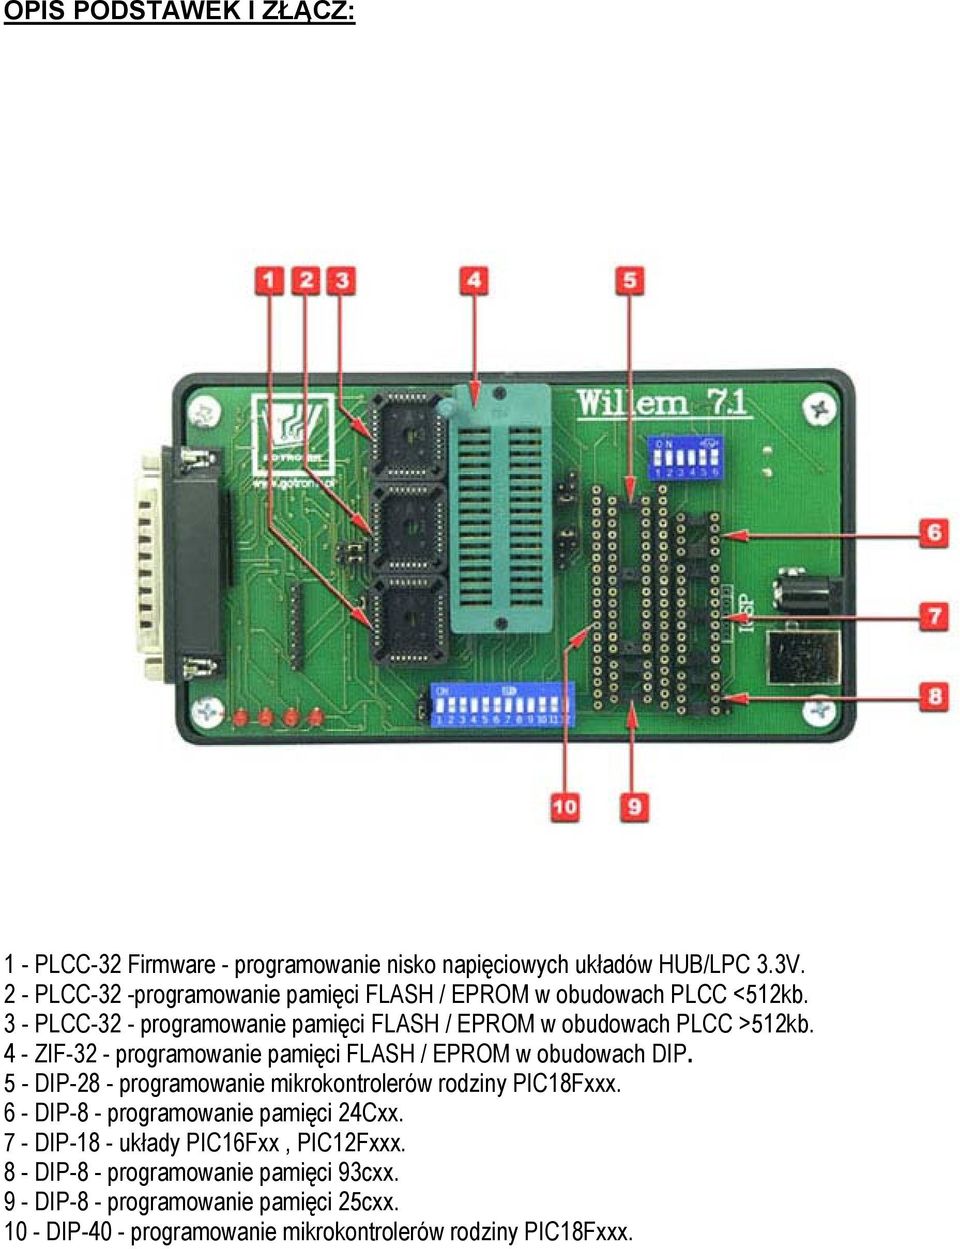 4 - ZIF-32 - programowanie pamięci FLASH / EPROM w obudowach DIP. 5 - DIP-28 - programowanie mikrokontrolerów rodziny PIC18Fxxx.